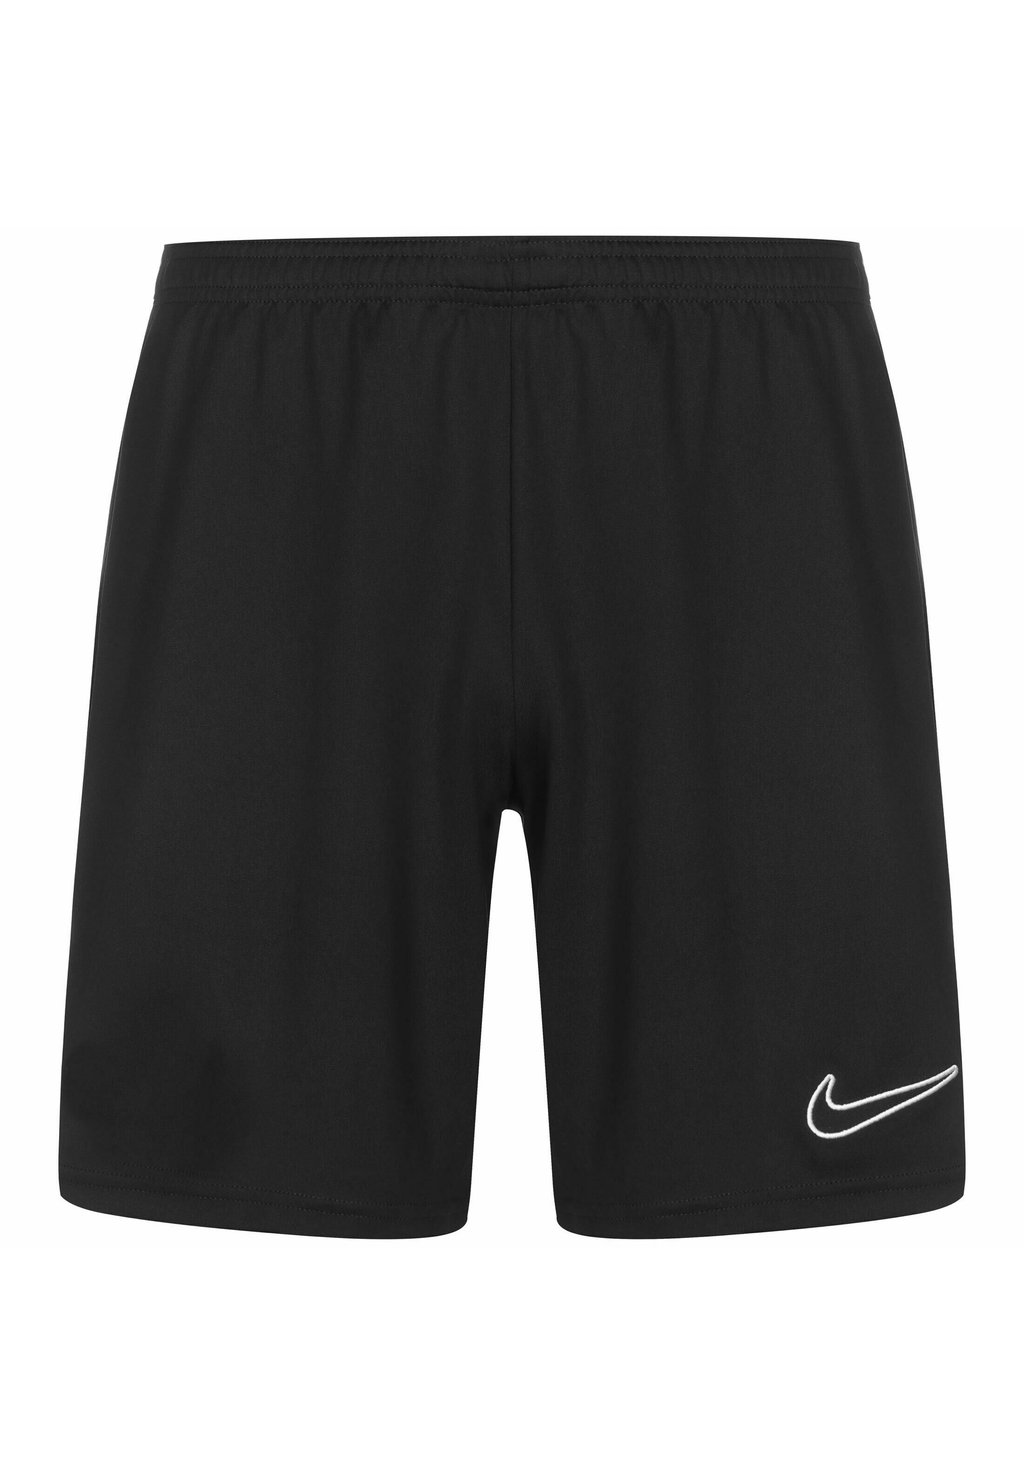 Спортивные шорты ACADEMY 23 Nike, цвет black black white